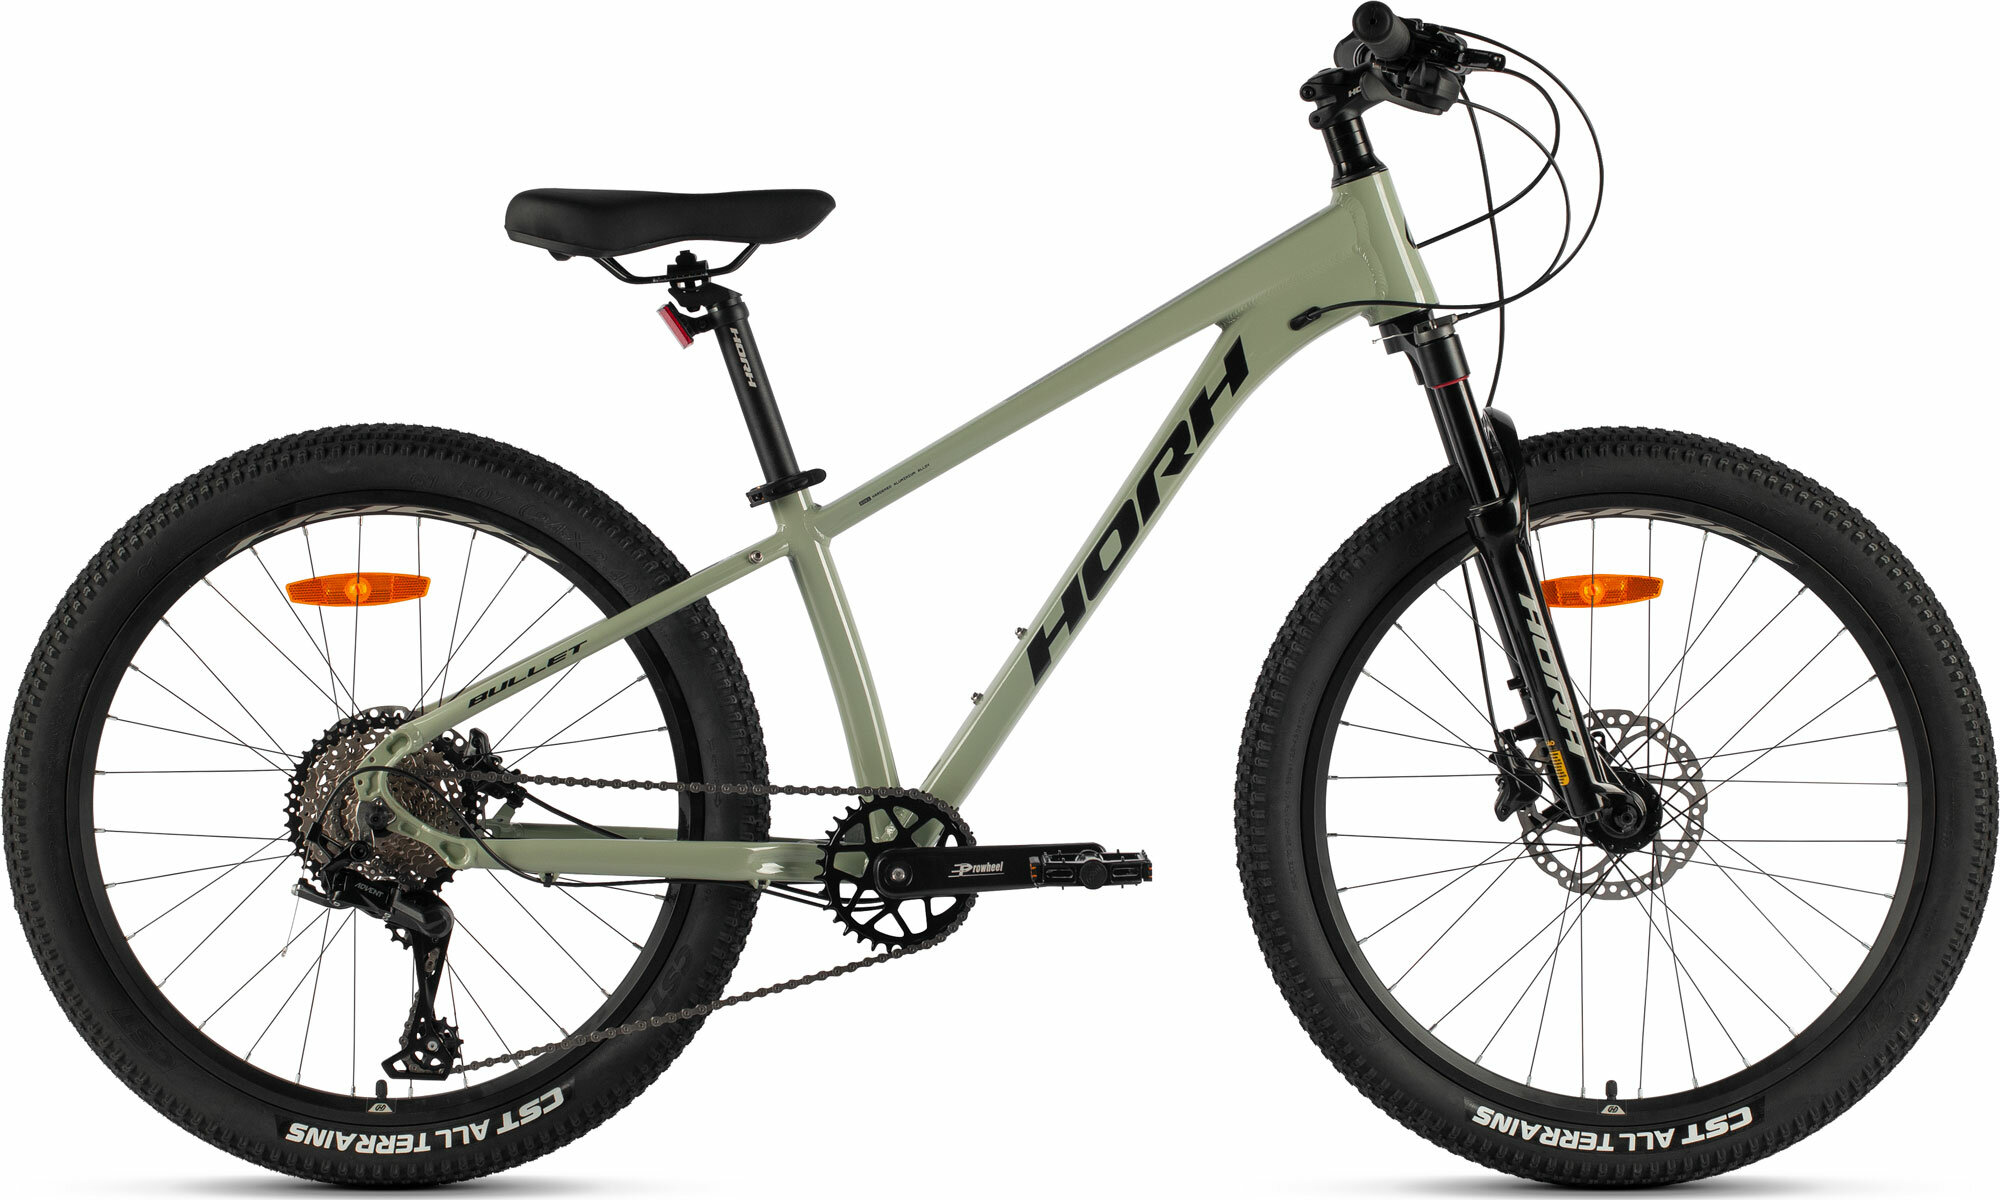 Велосипед горный HORH BULLET BHDAR 4.0 24" (2023), хардтейл, детский, для мальчиков, мужской, алюминиевая рама, оборудование Microshift, 9 скоростей, дисковые гидравлические тормоза, цвет Grey-Black, серый/черный цвет, размер рамы 13,5", для роста 150-160